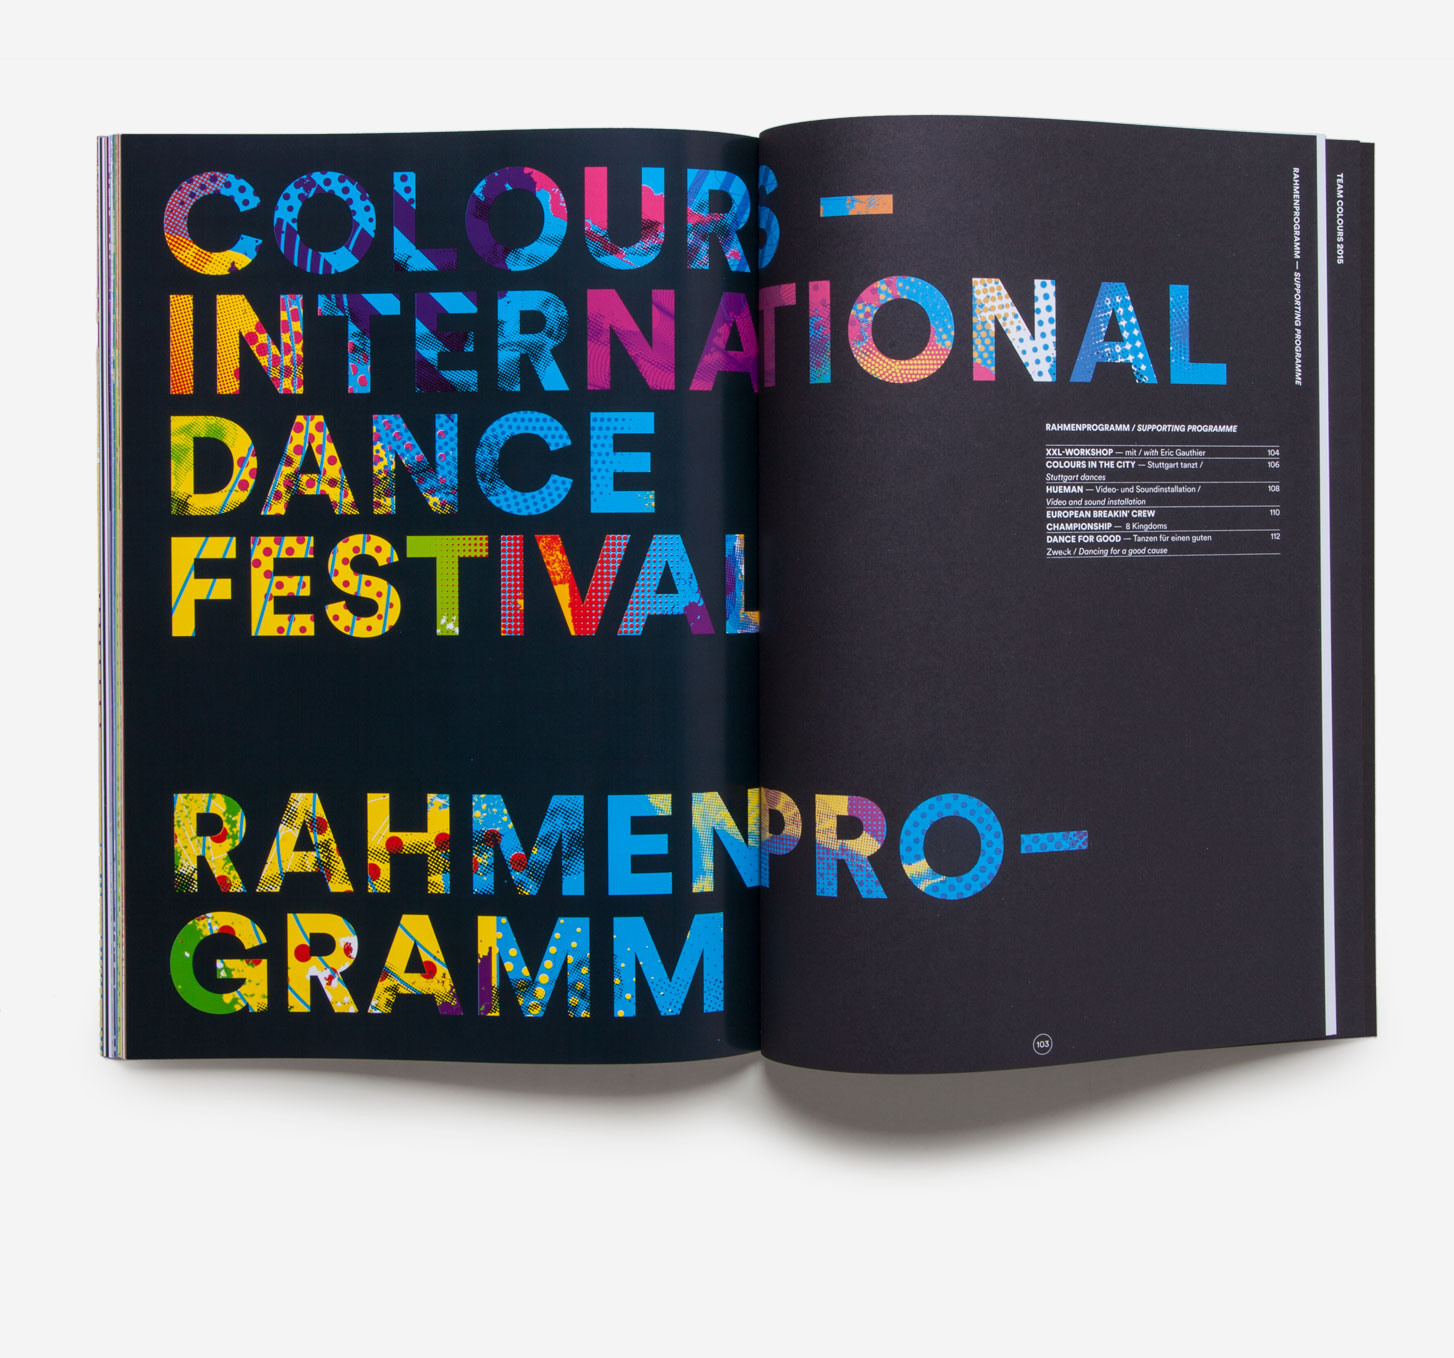 75a aus Stuttgart entwickelt das Corporate Design von Colours International Dance Festival 2015 presented by Eric Gauthier